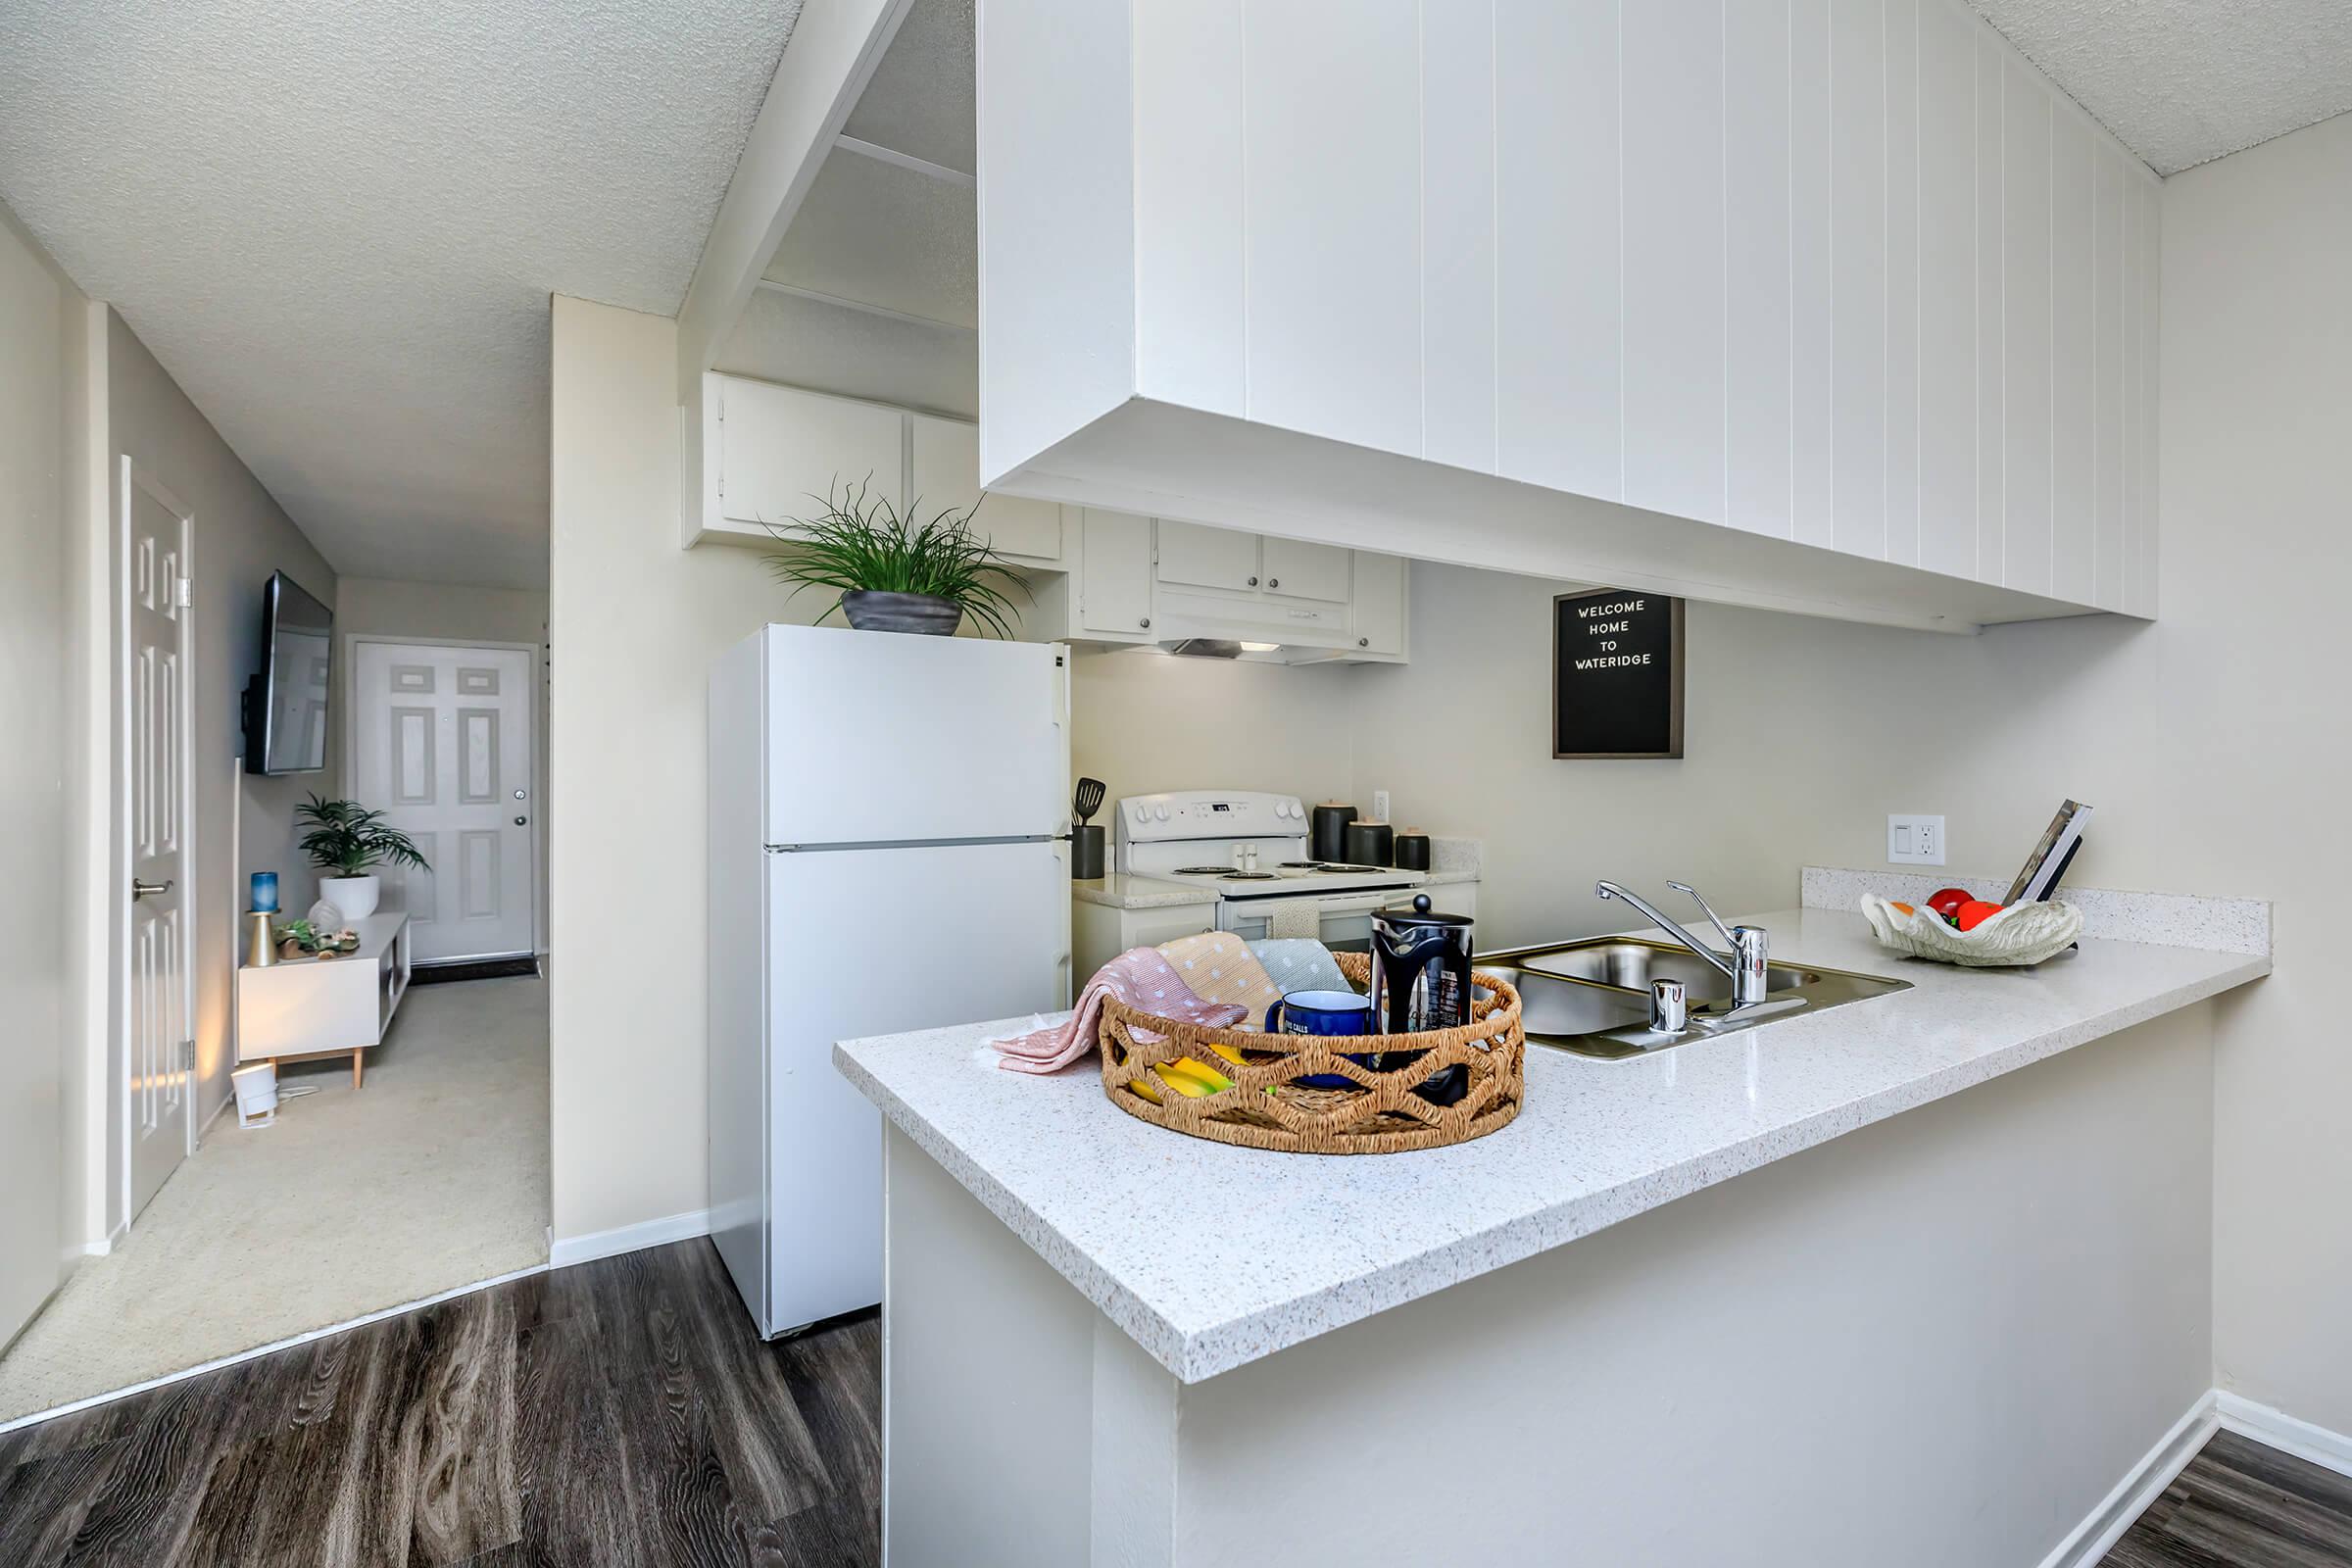 Kitchen with white appliances